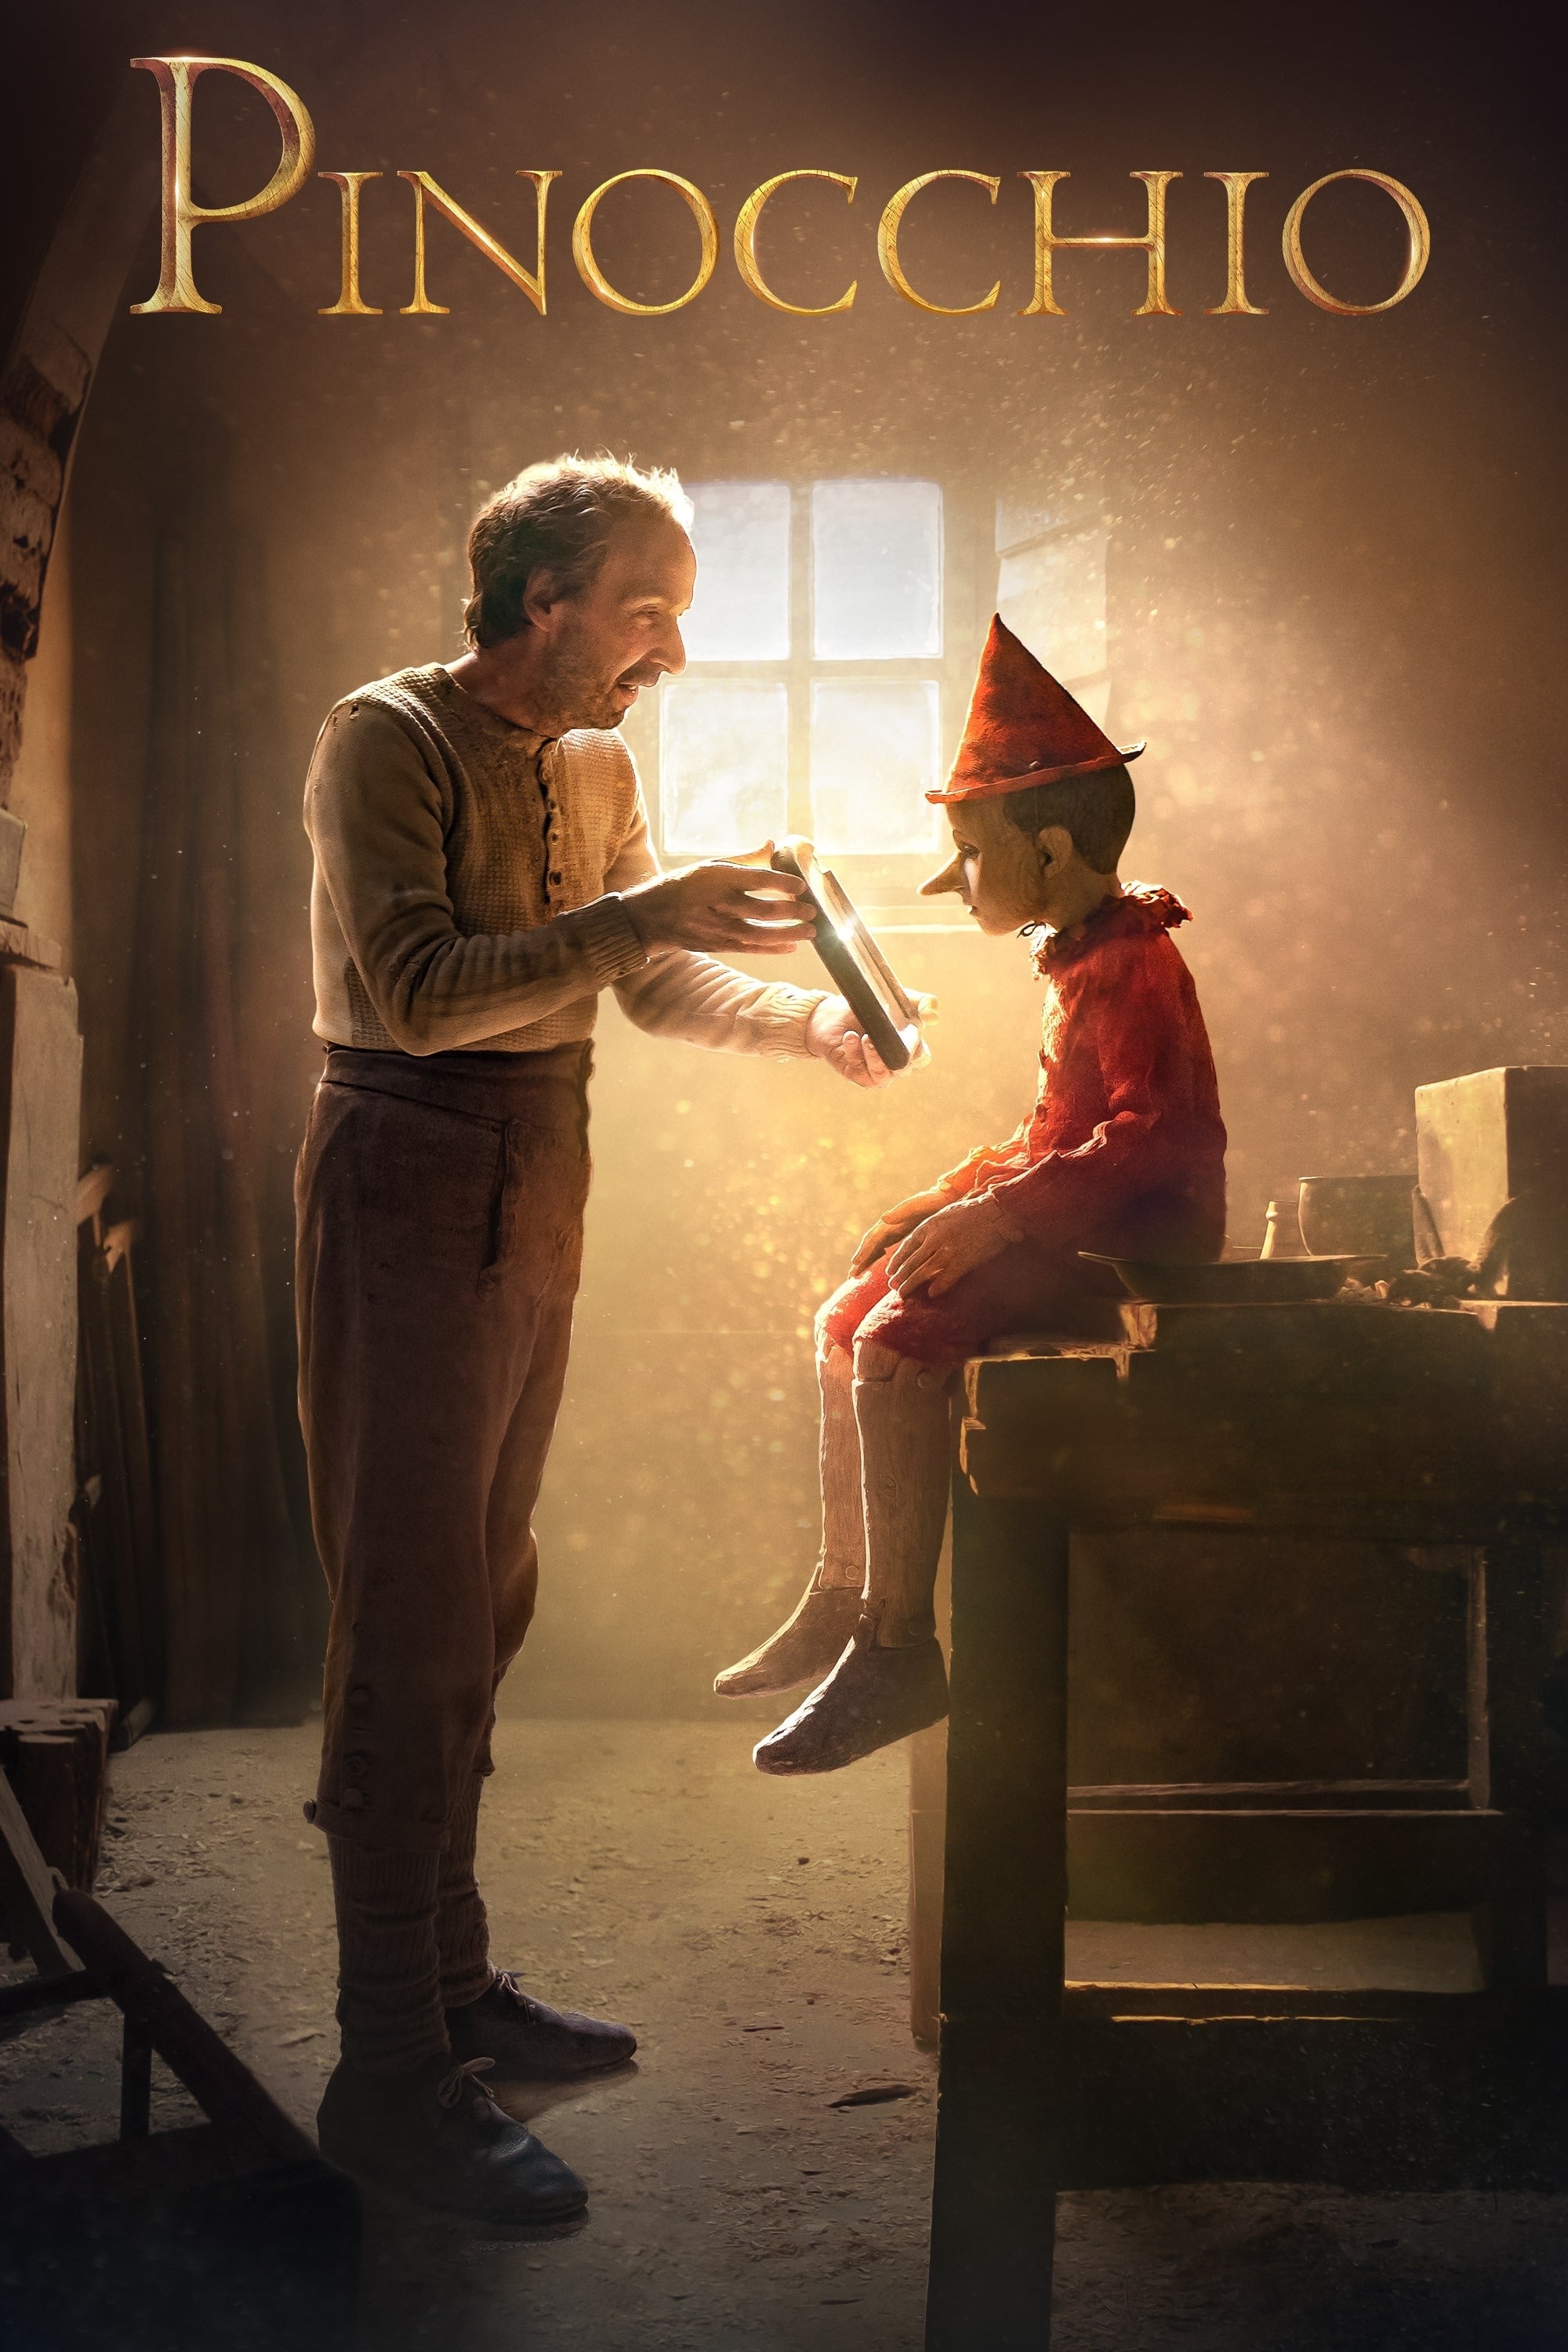 دانلود رایگان فیلم پینوکیو با دوبله فارسی Pinocchio 2019 WEB-DL